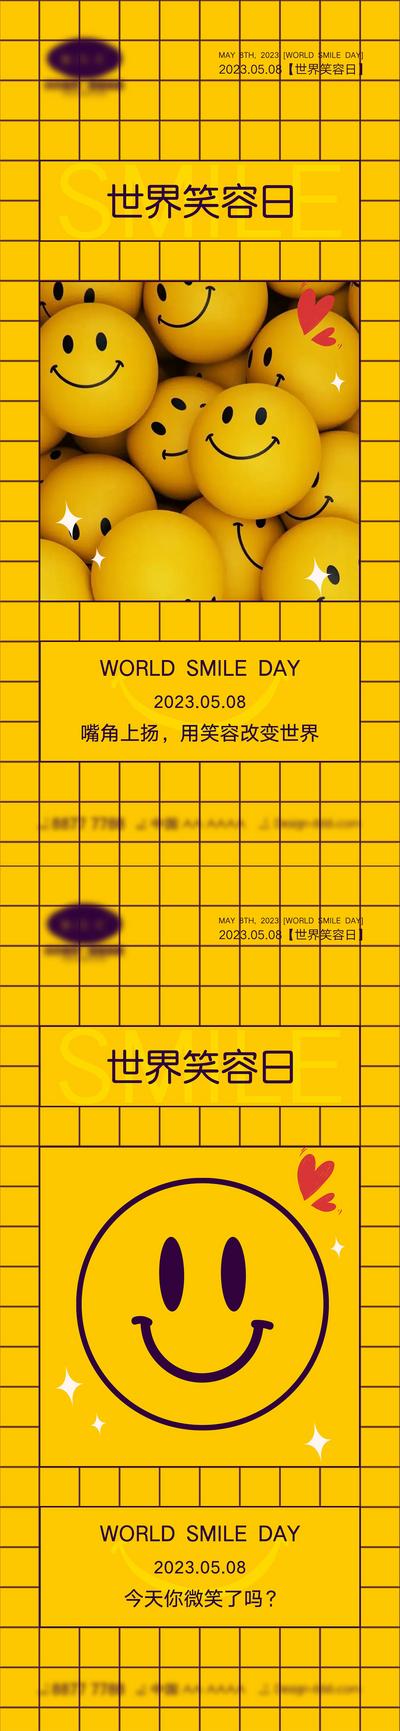 南门网 海报 公立节日 世界微笑日 58 微笑日 笑脸 笑容 创新 简约 卡通 可爱